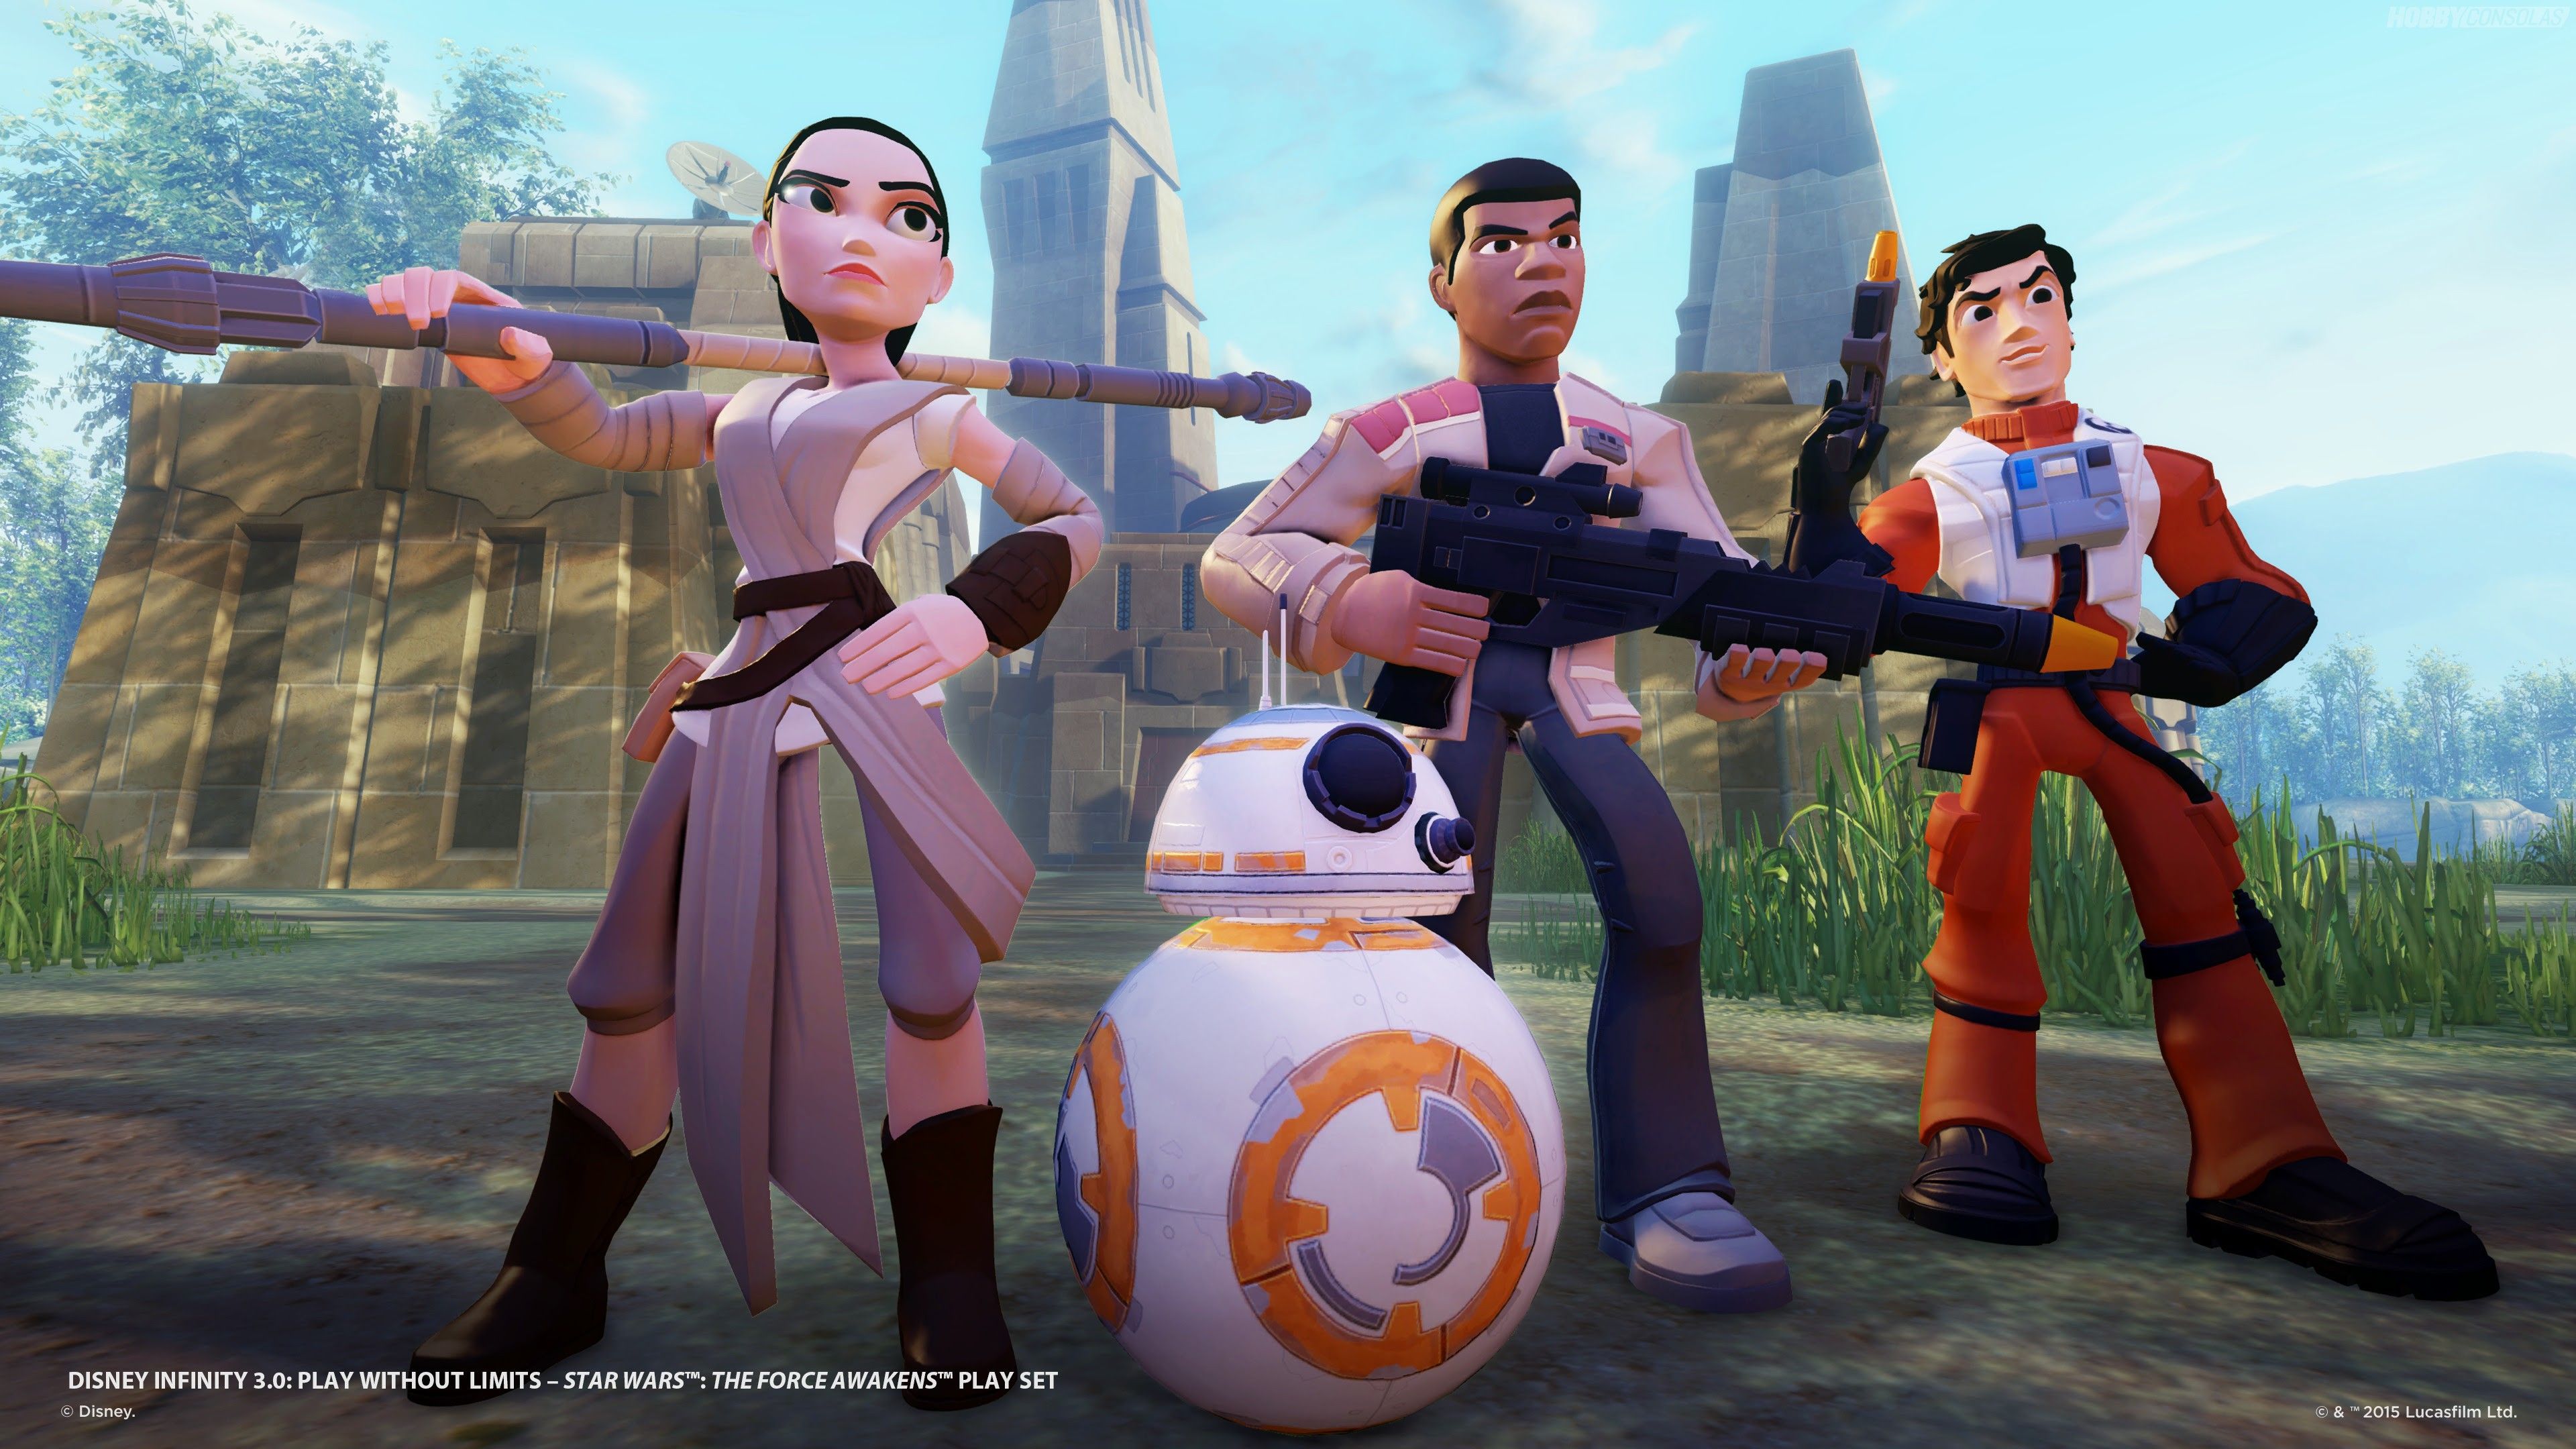 Análisis de Star Wars Episodio VII: El Despertar de la Fuerza en Disney Infinity 3.0